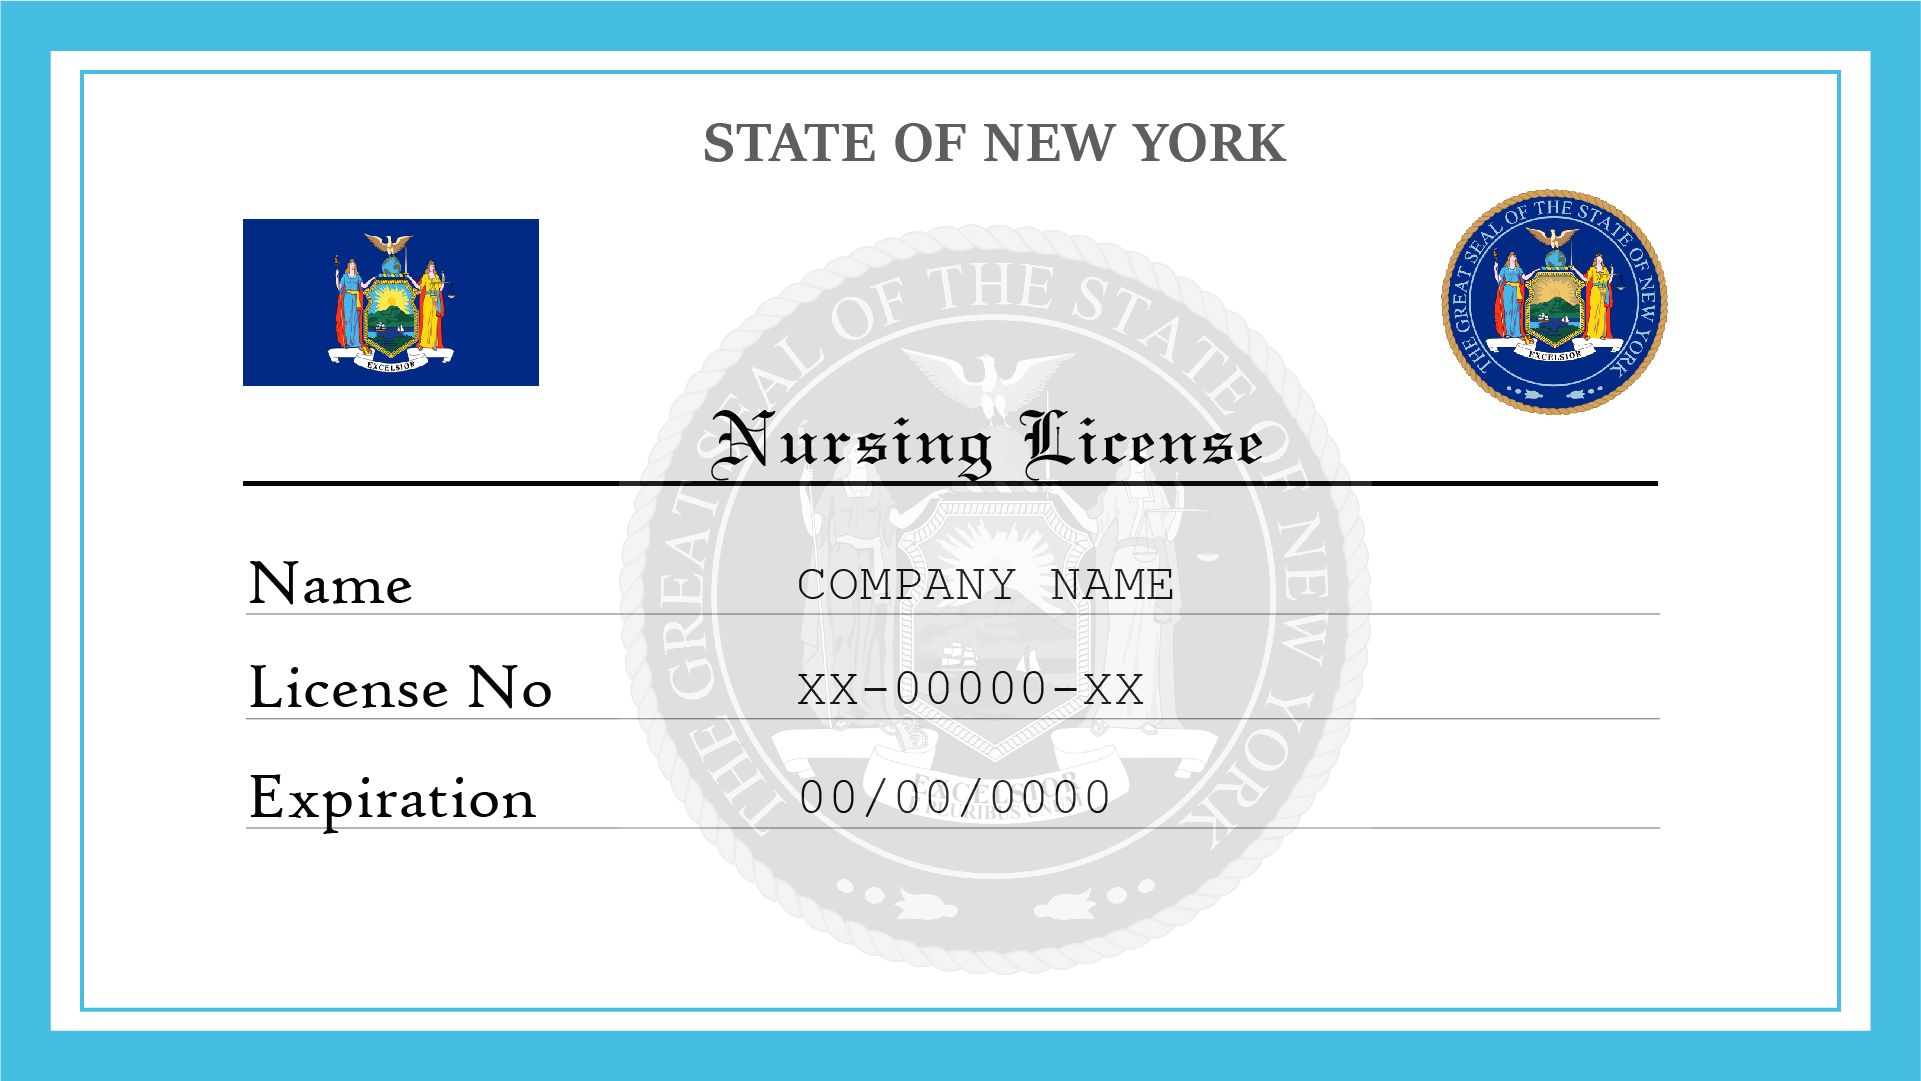 New York Nursing License 6a6b2de460 